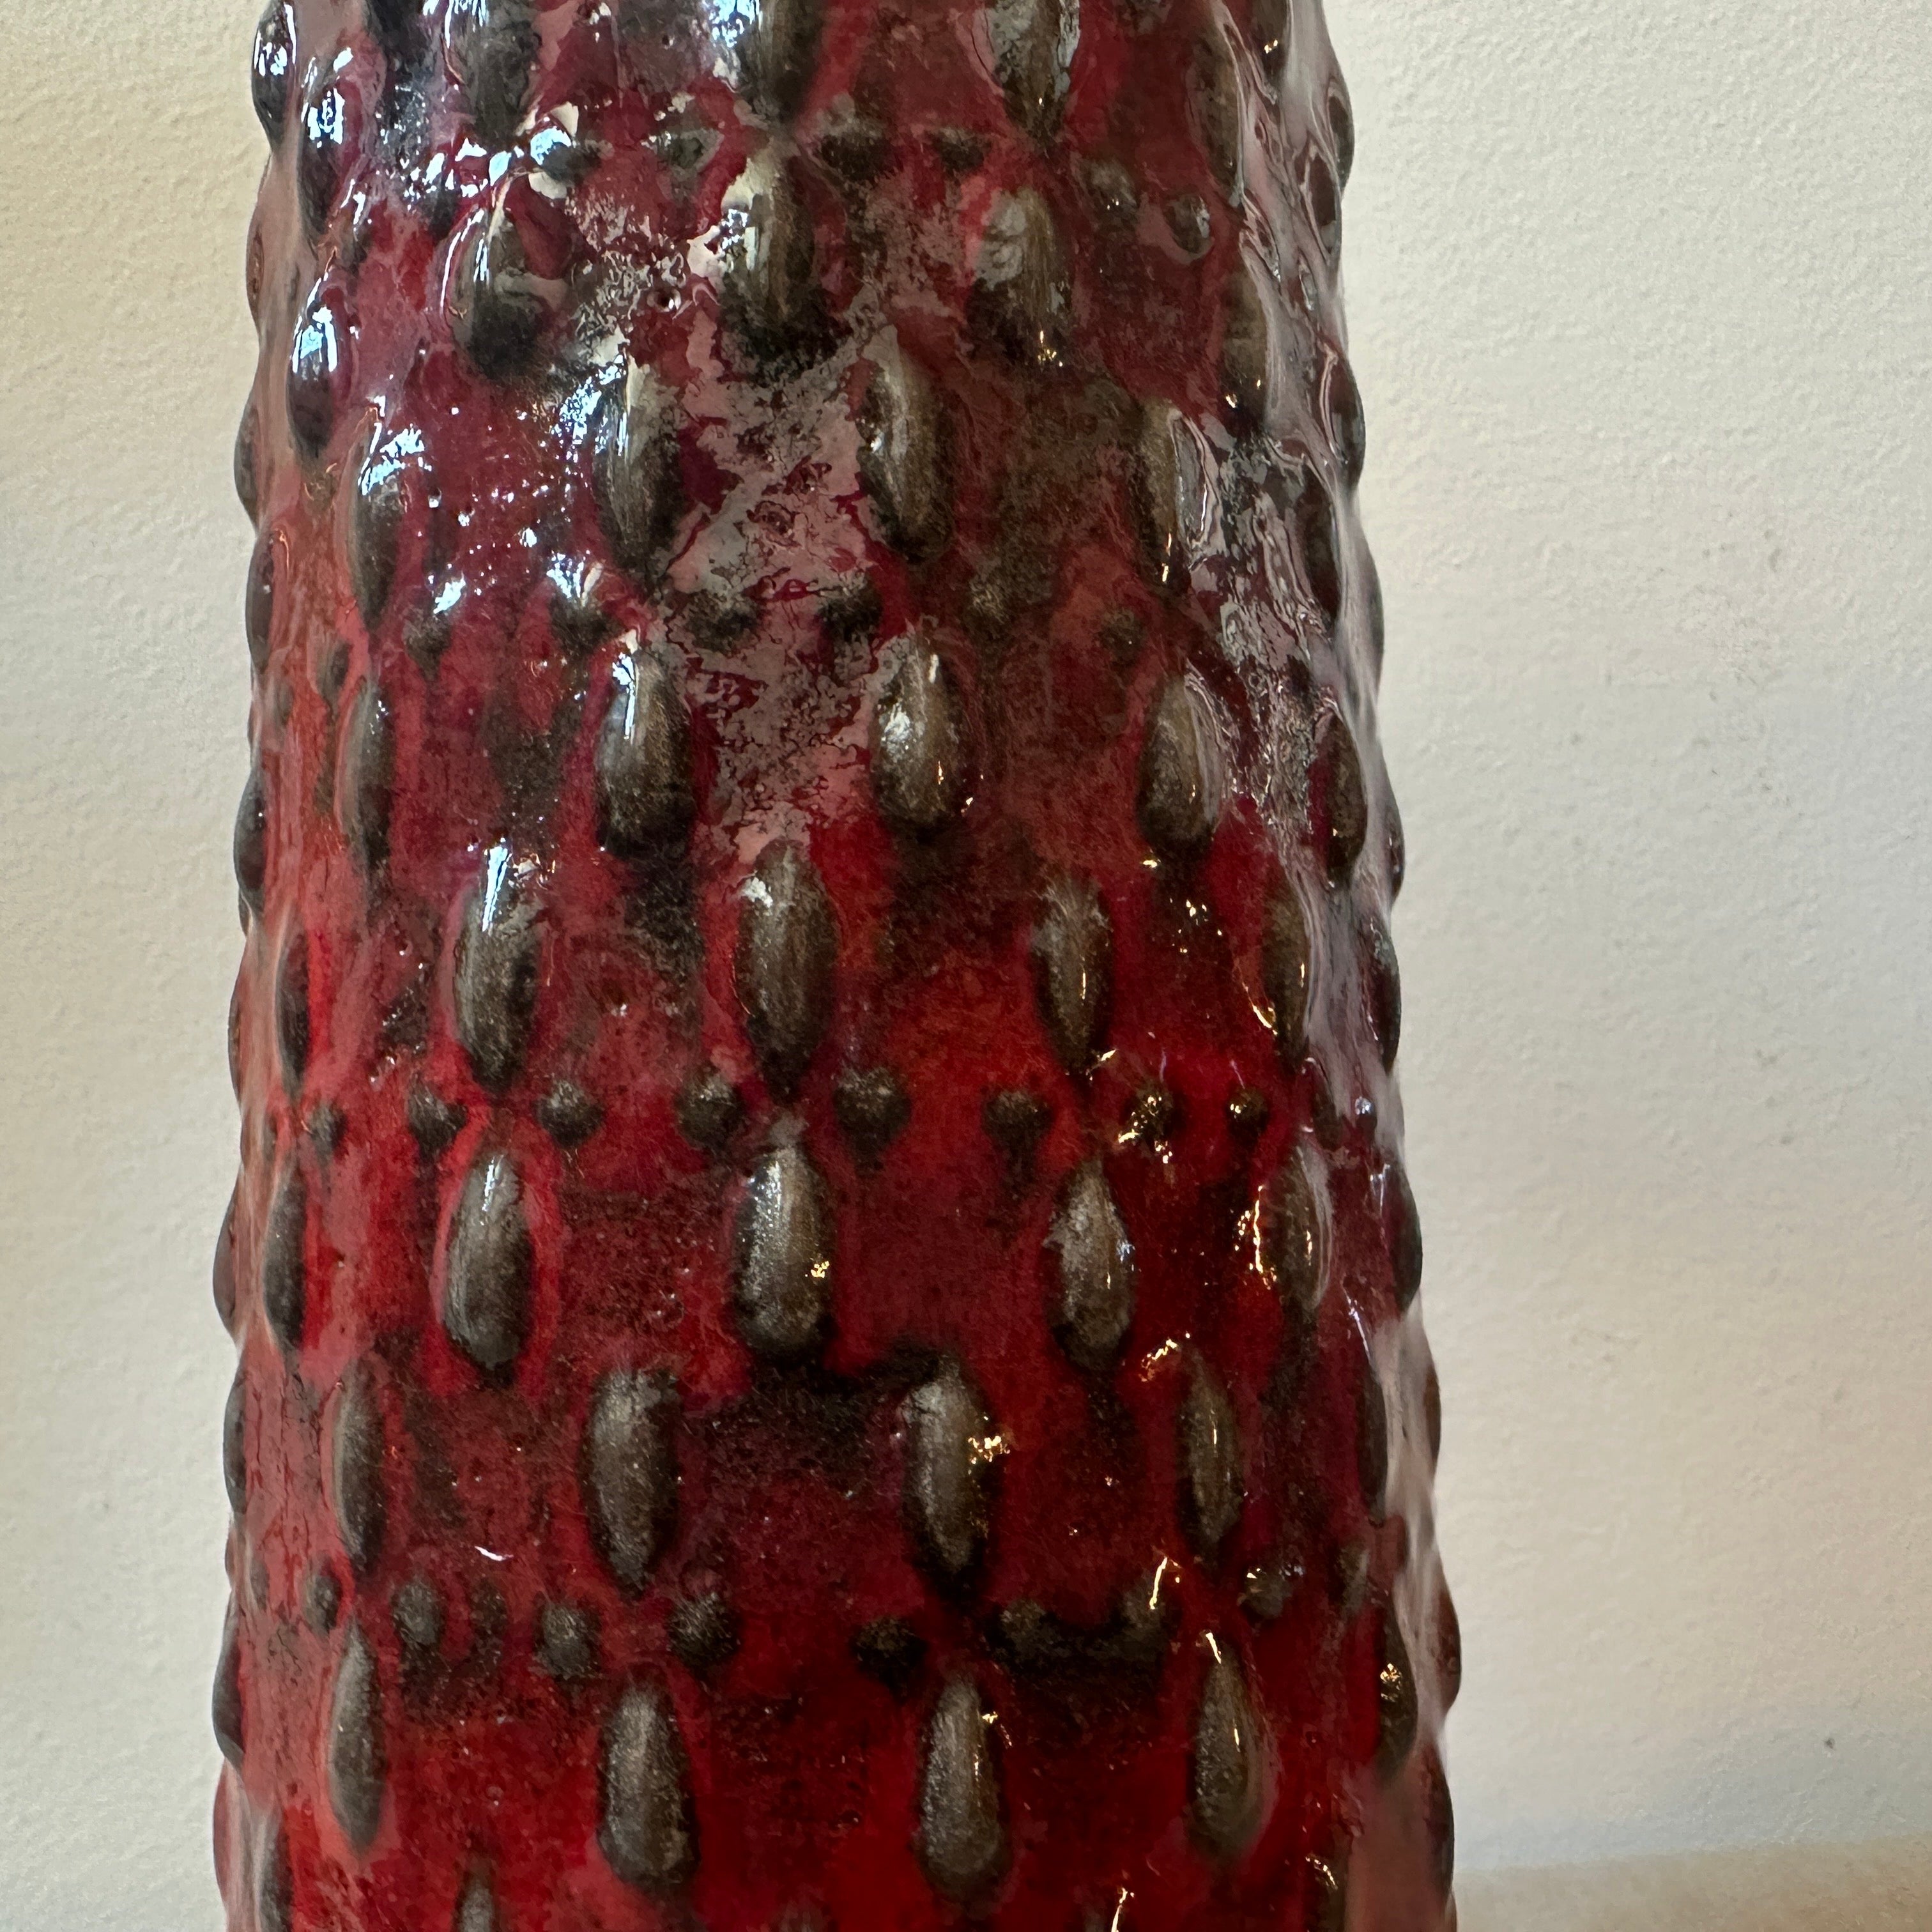 Eine fette Vase aus Lava-Keramik, die in den siebziger Jahren von WGP in Deutschland hergestellt wurde, ist in schönem Zustand. Die Vase ist ein auffallendes und einzigartiges Kunst- und Designobjekt, das die kühne und dynamische Ästhetik des